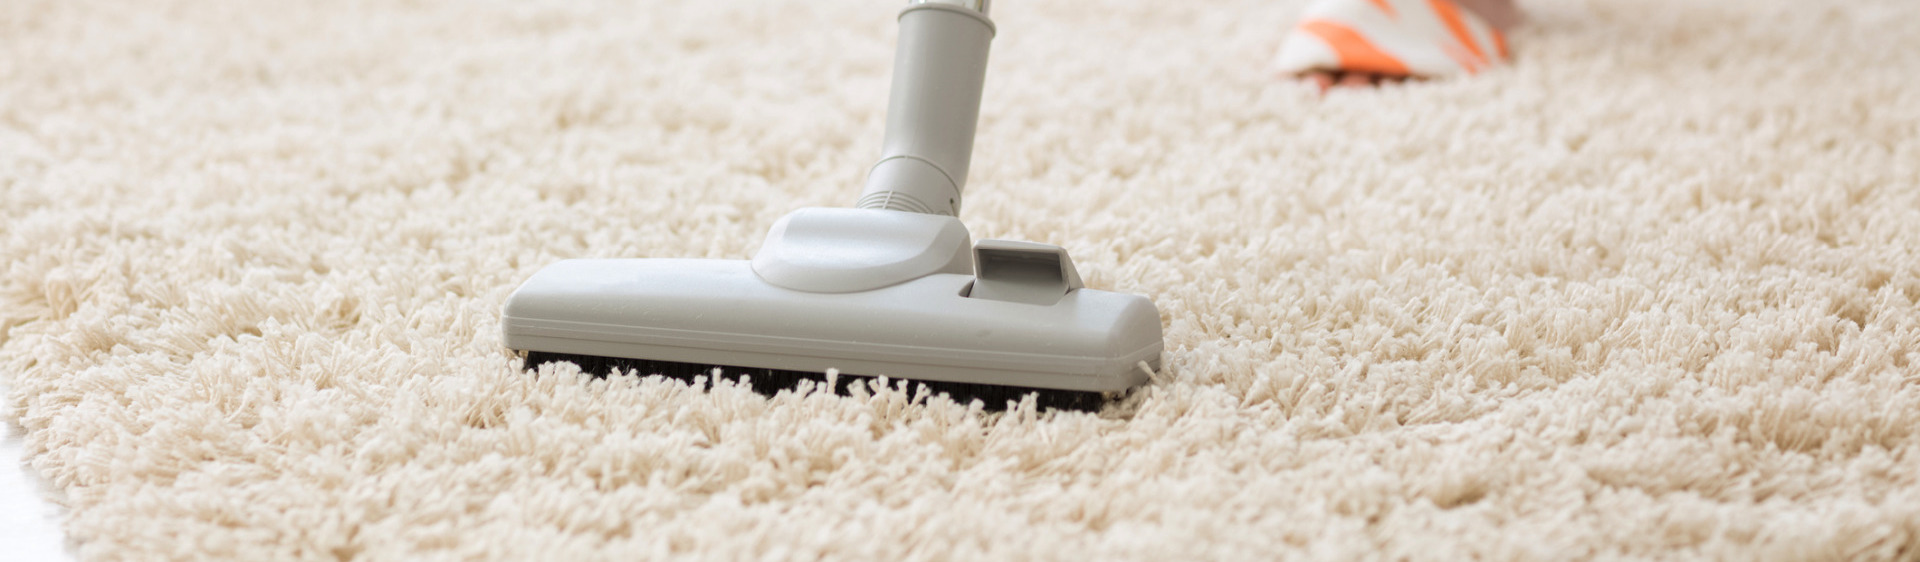 Vacuuming a long pile carpet